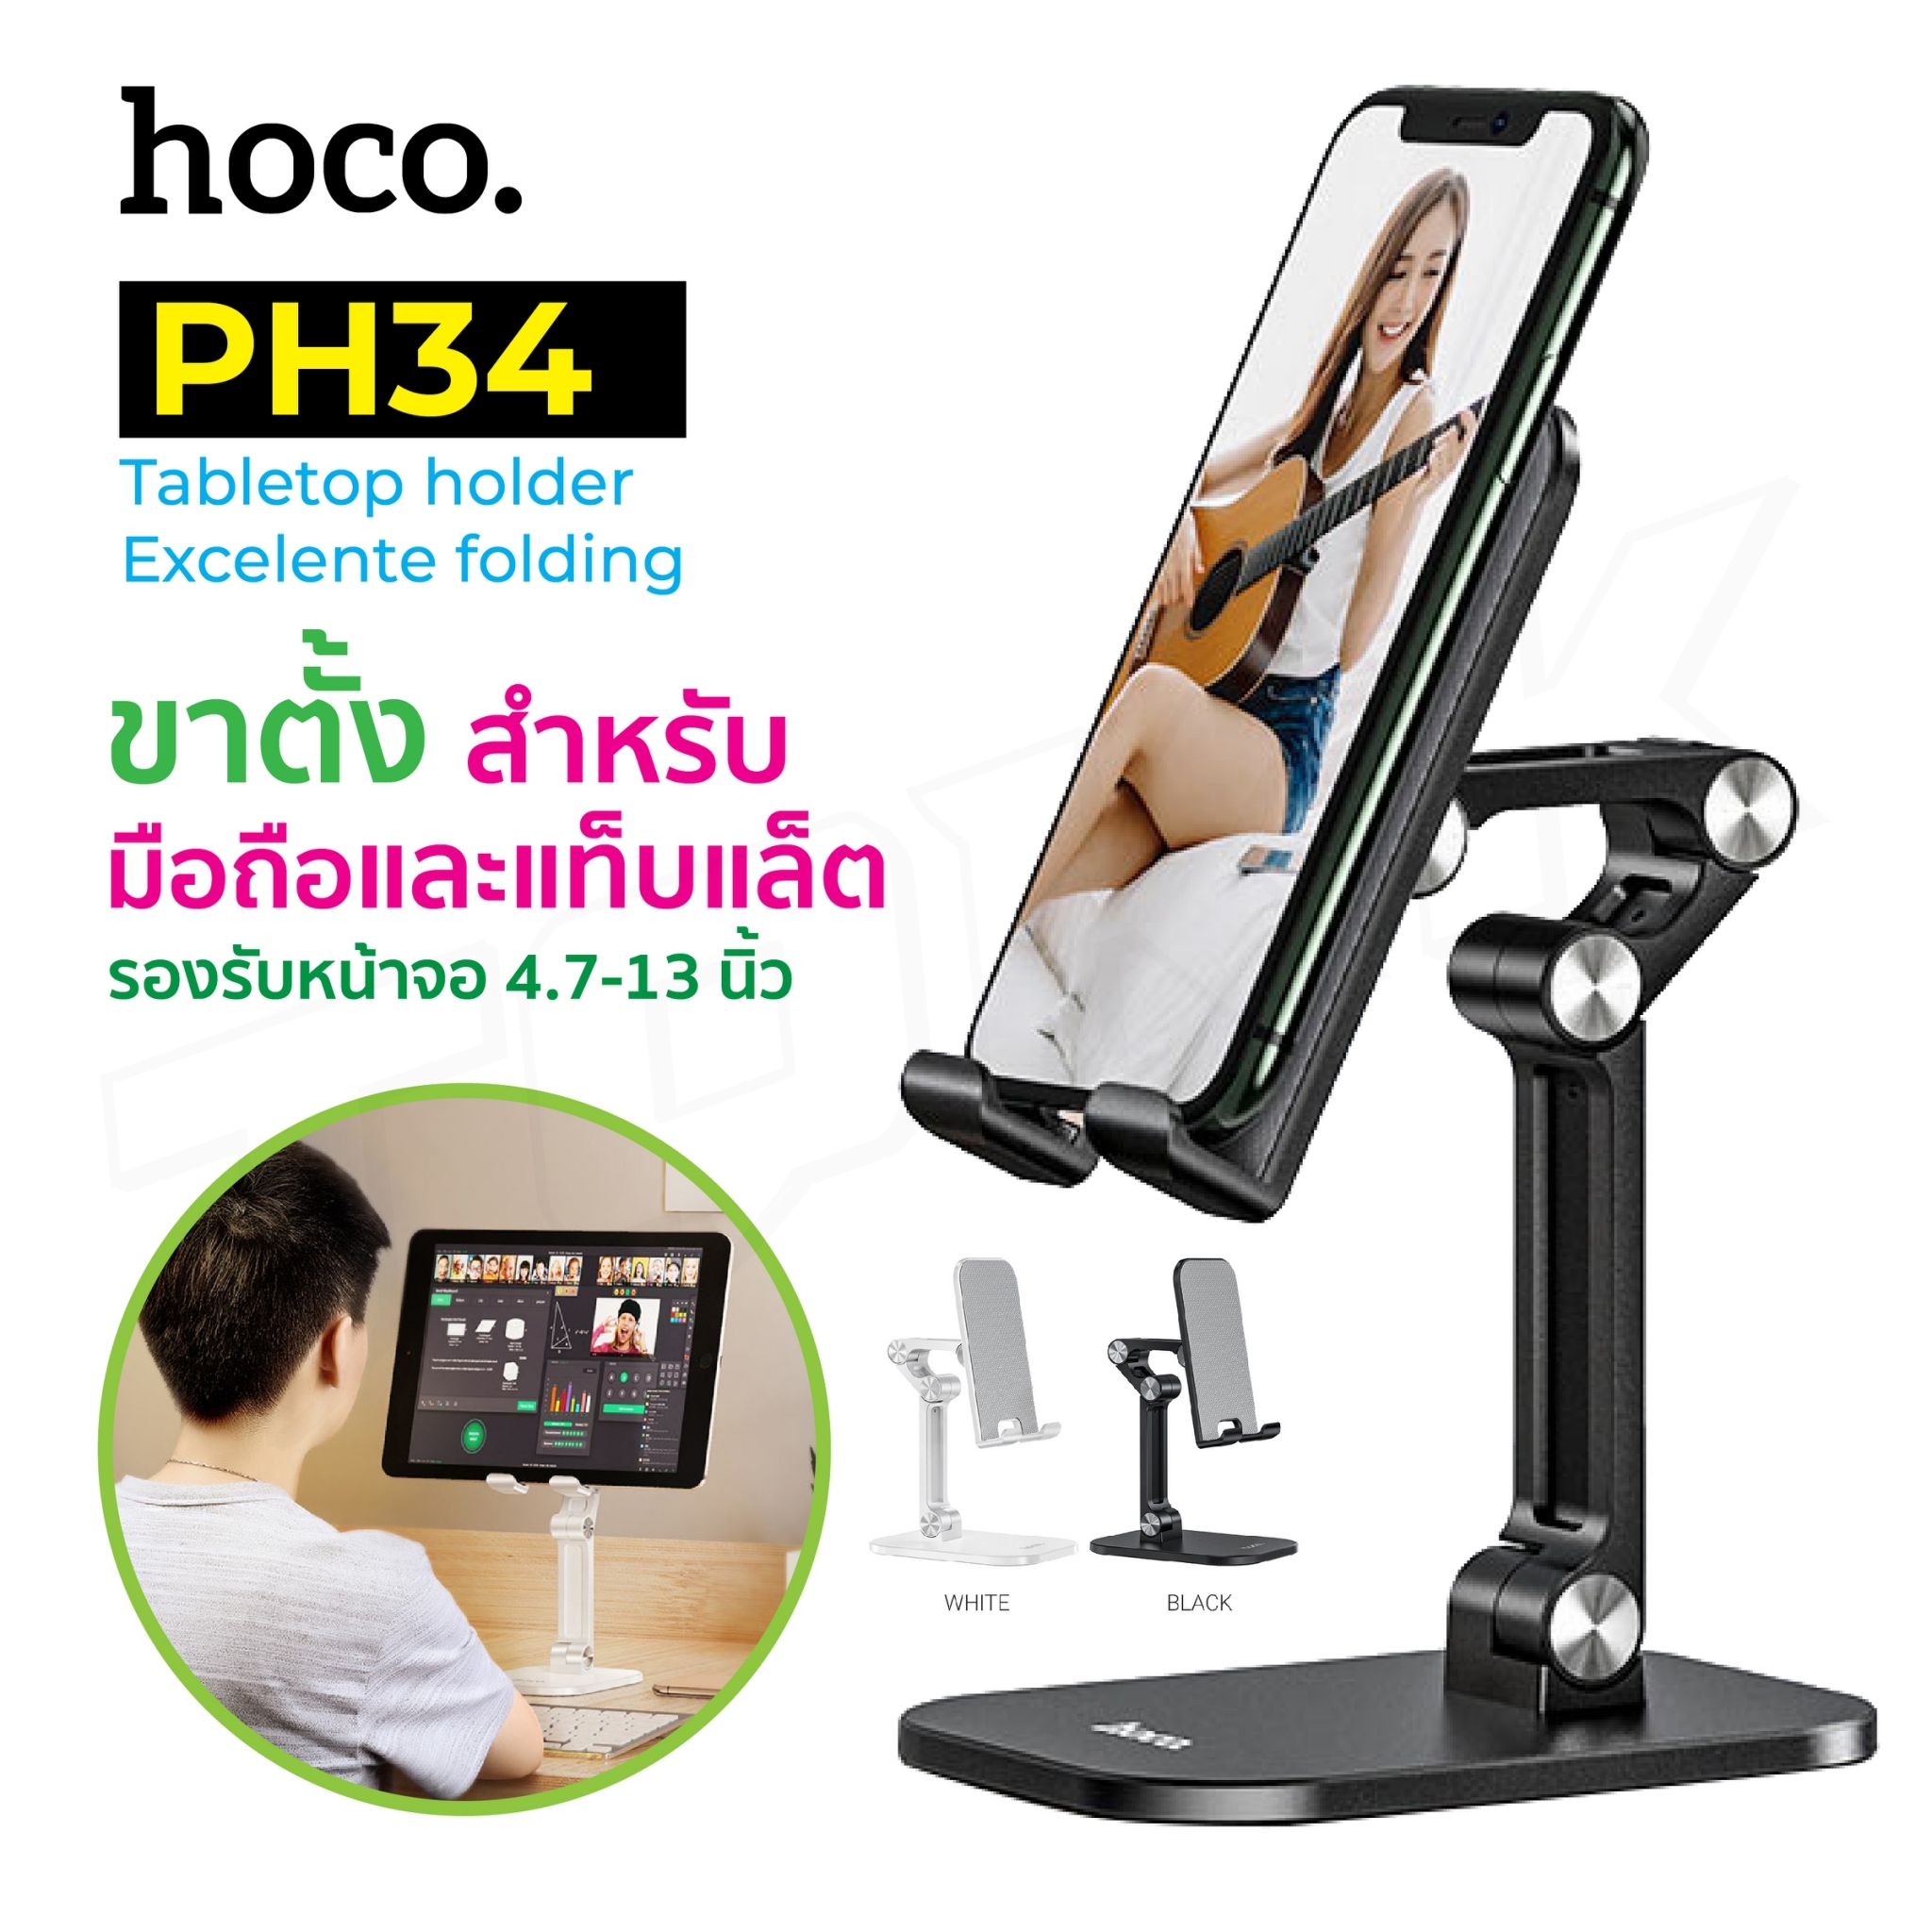 Hoco PH34 Folding Desktop Stand ที่วางมือถือ ขาตั้งมือถือ ที่วางโทรศัพท์ บนโต๊ะ